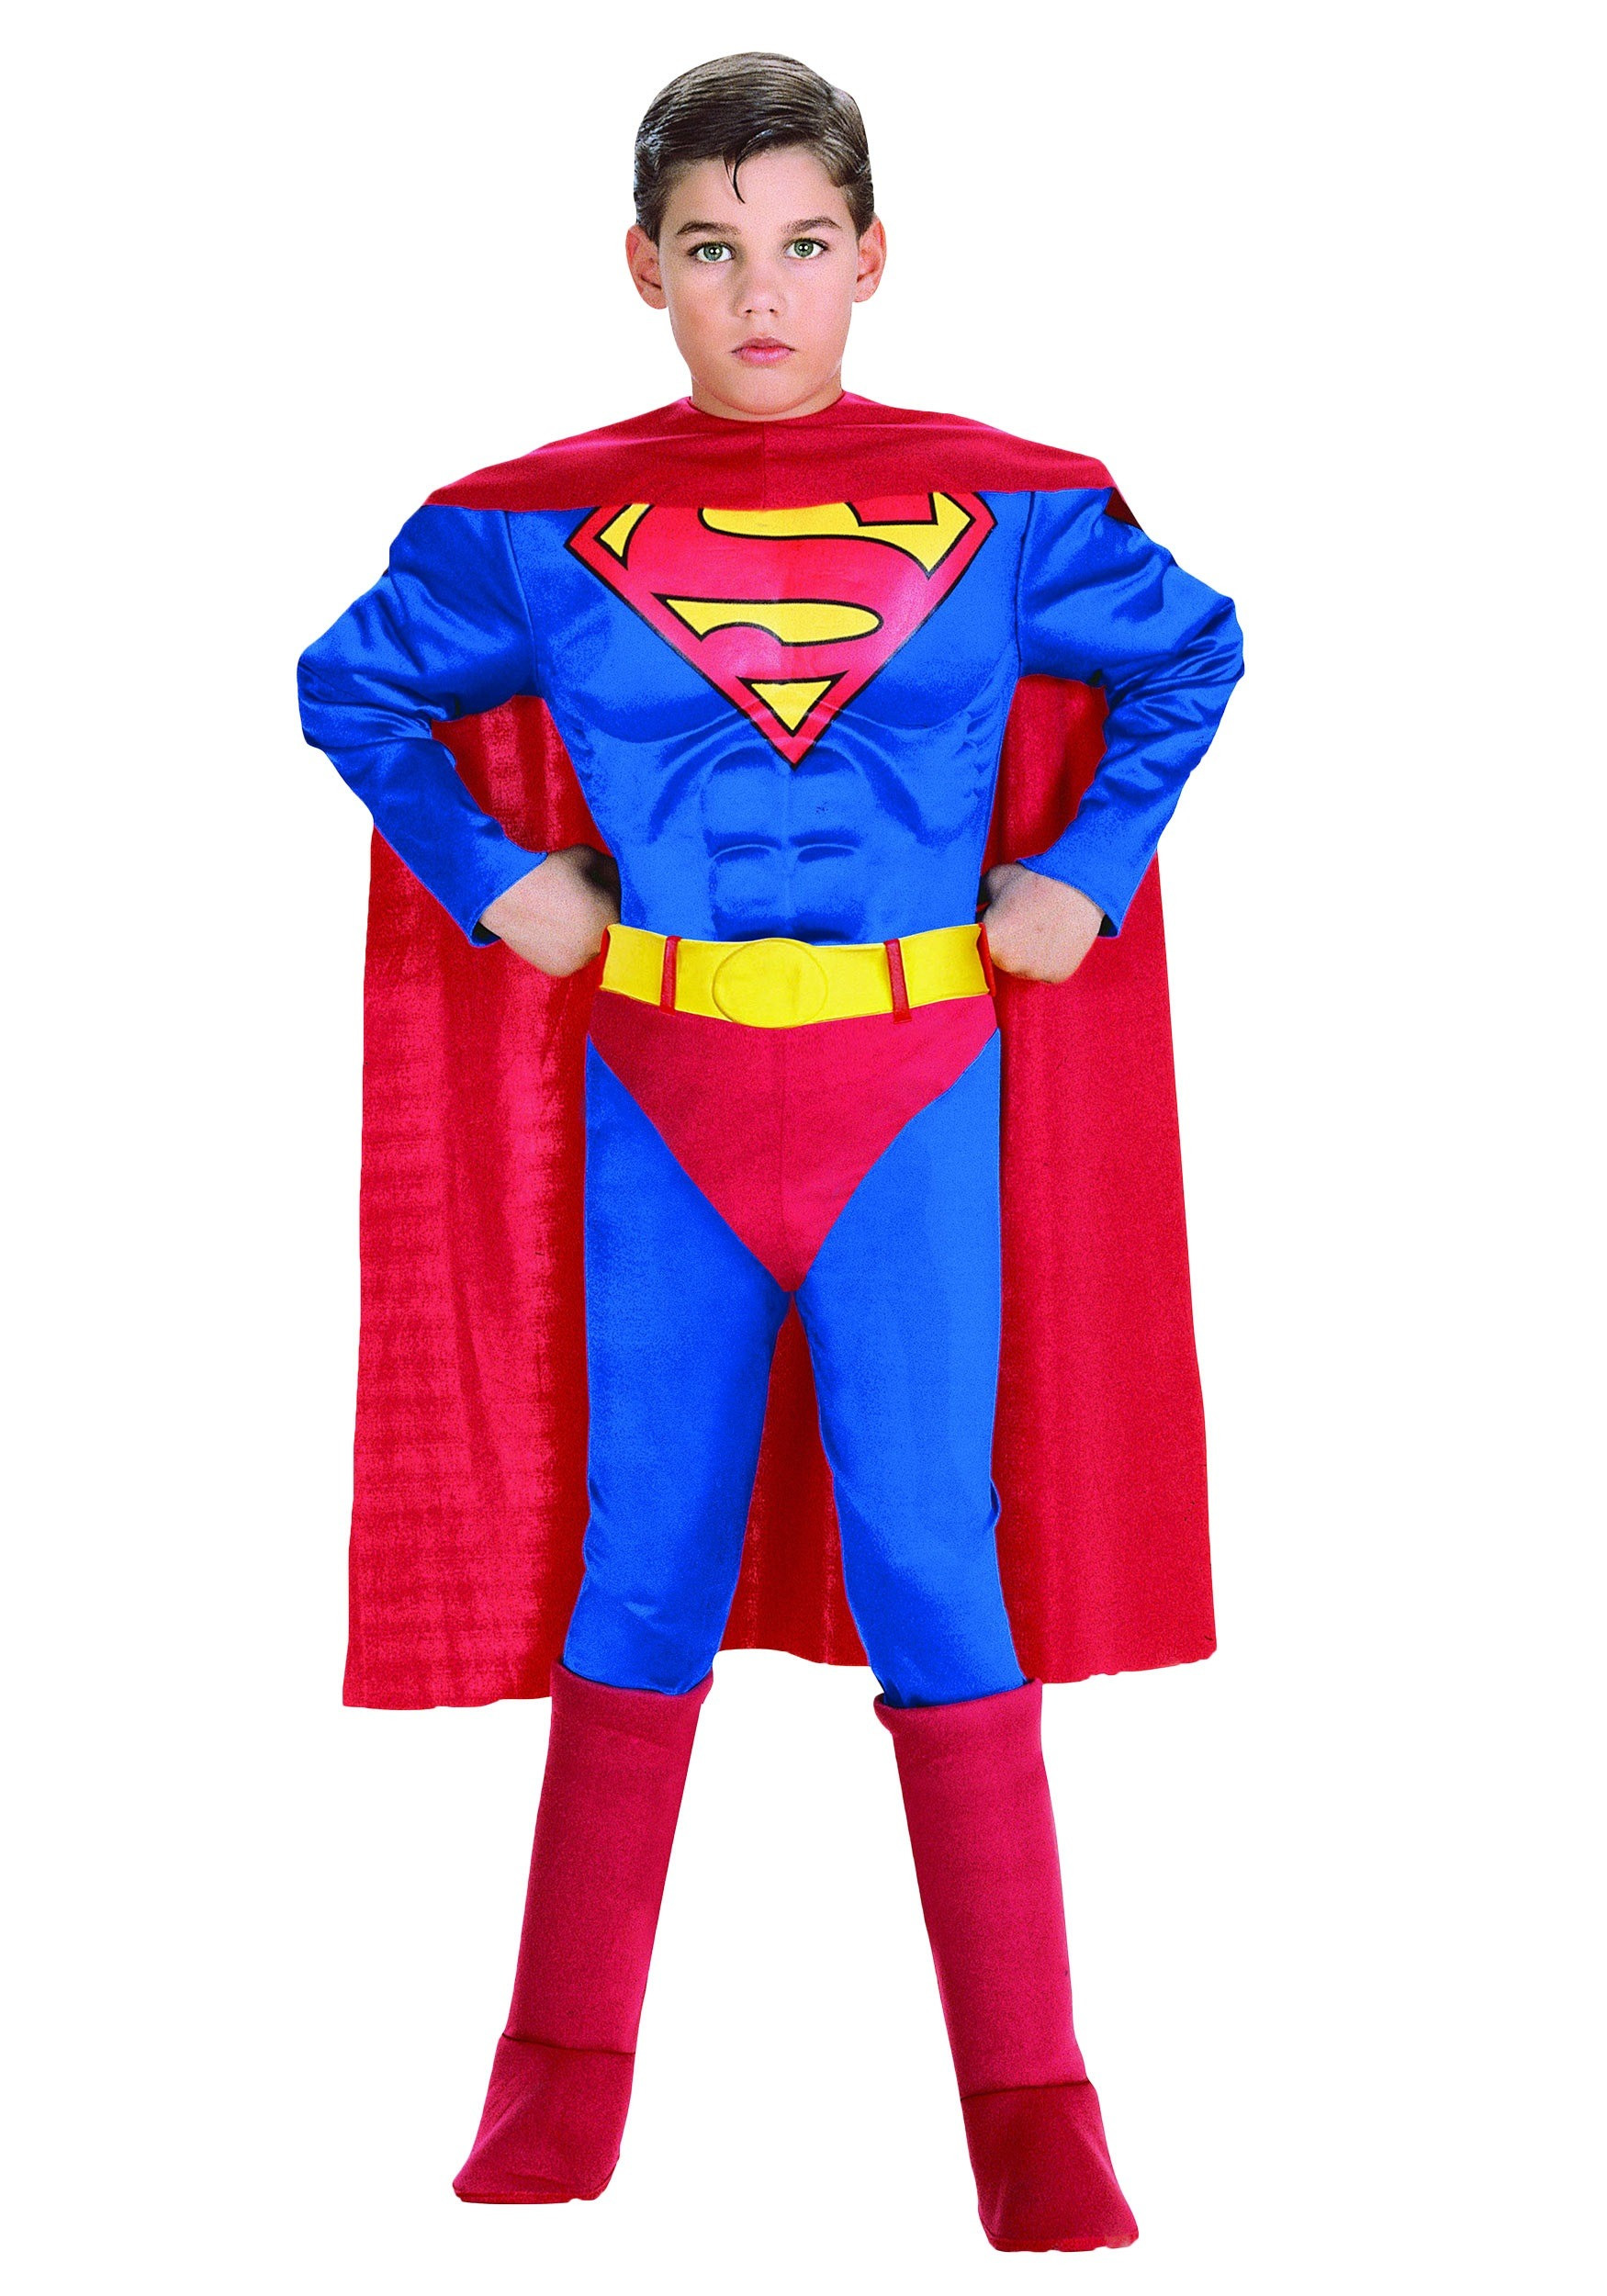 DIY Costumes Kids
 Child Deluxe Superman Costume Kids Superman Halloween